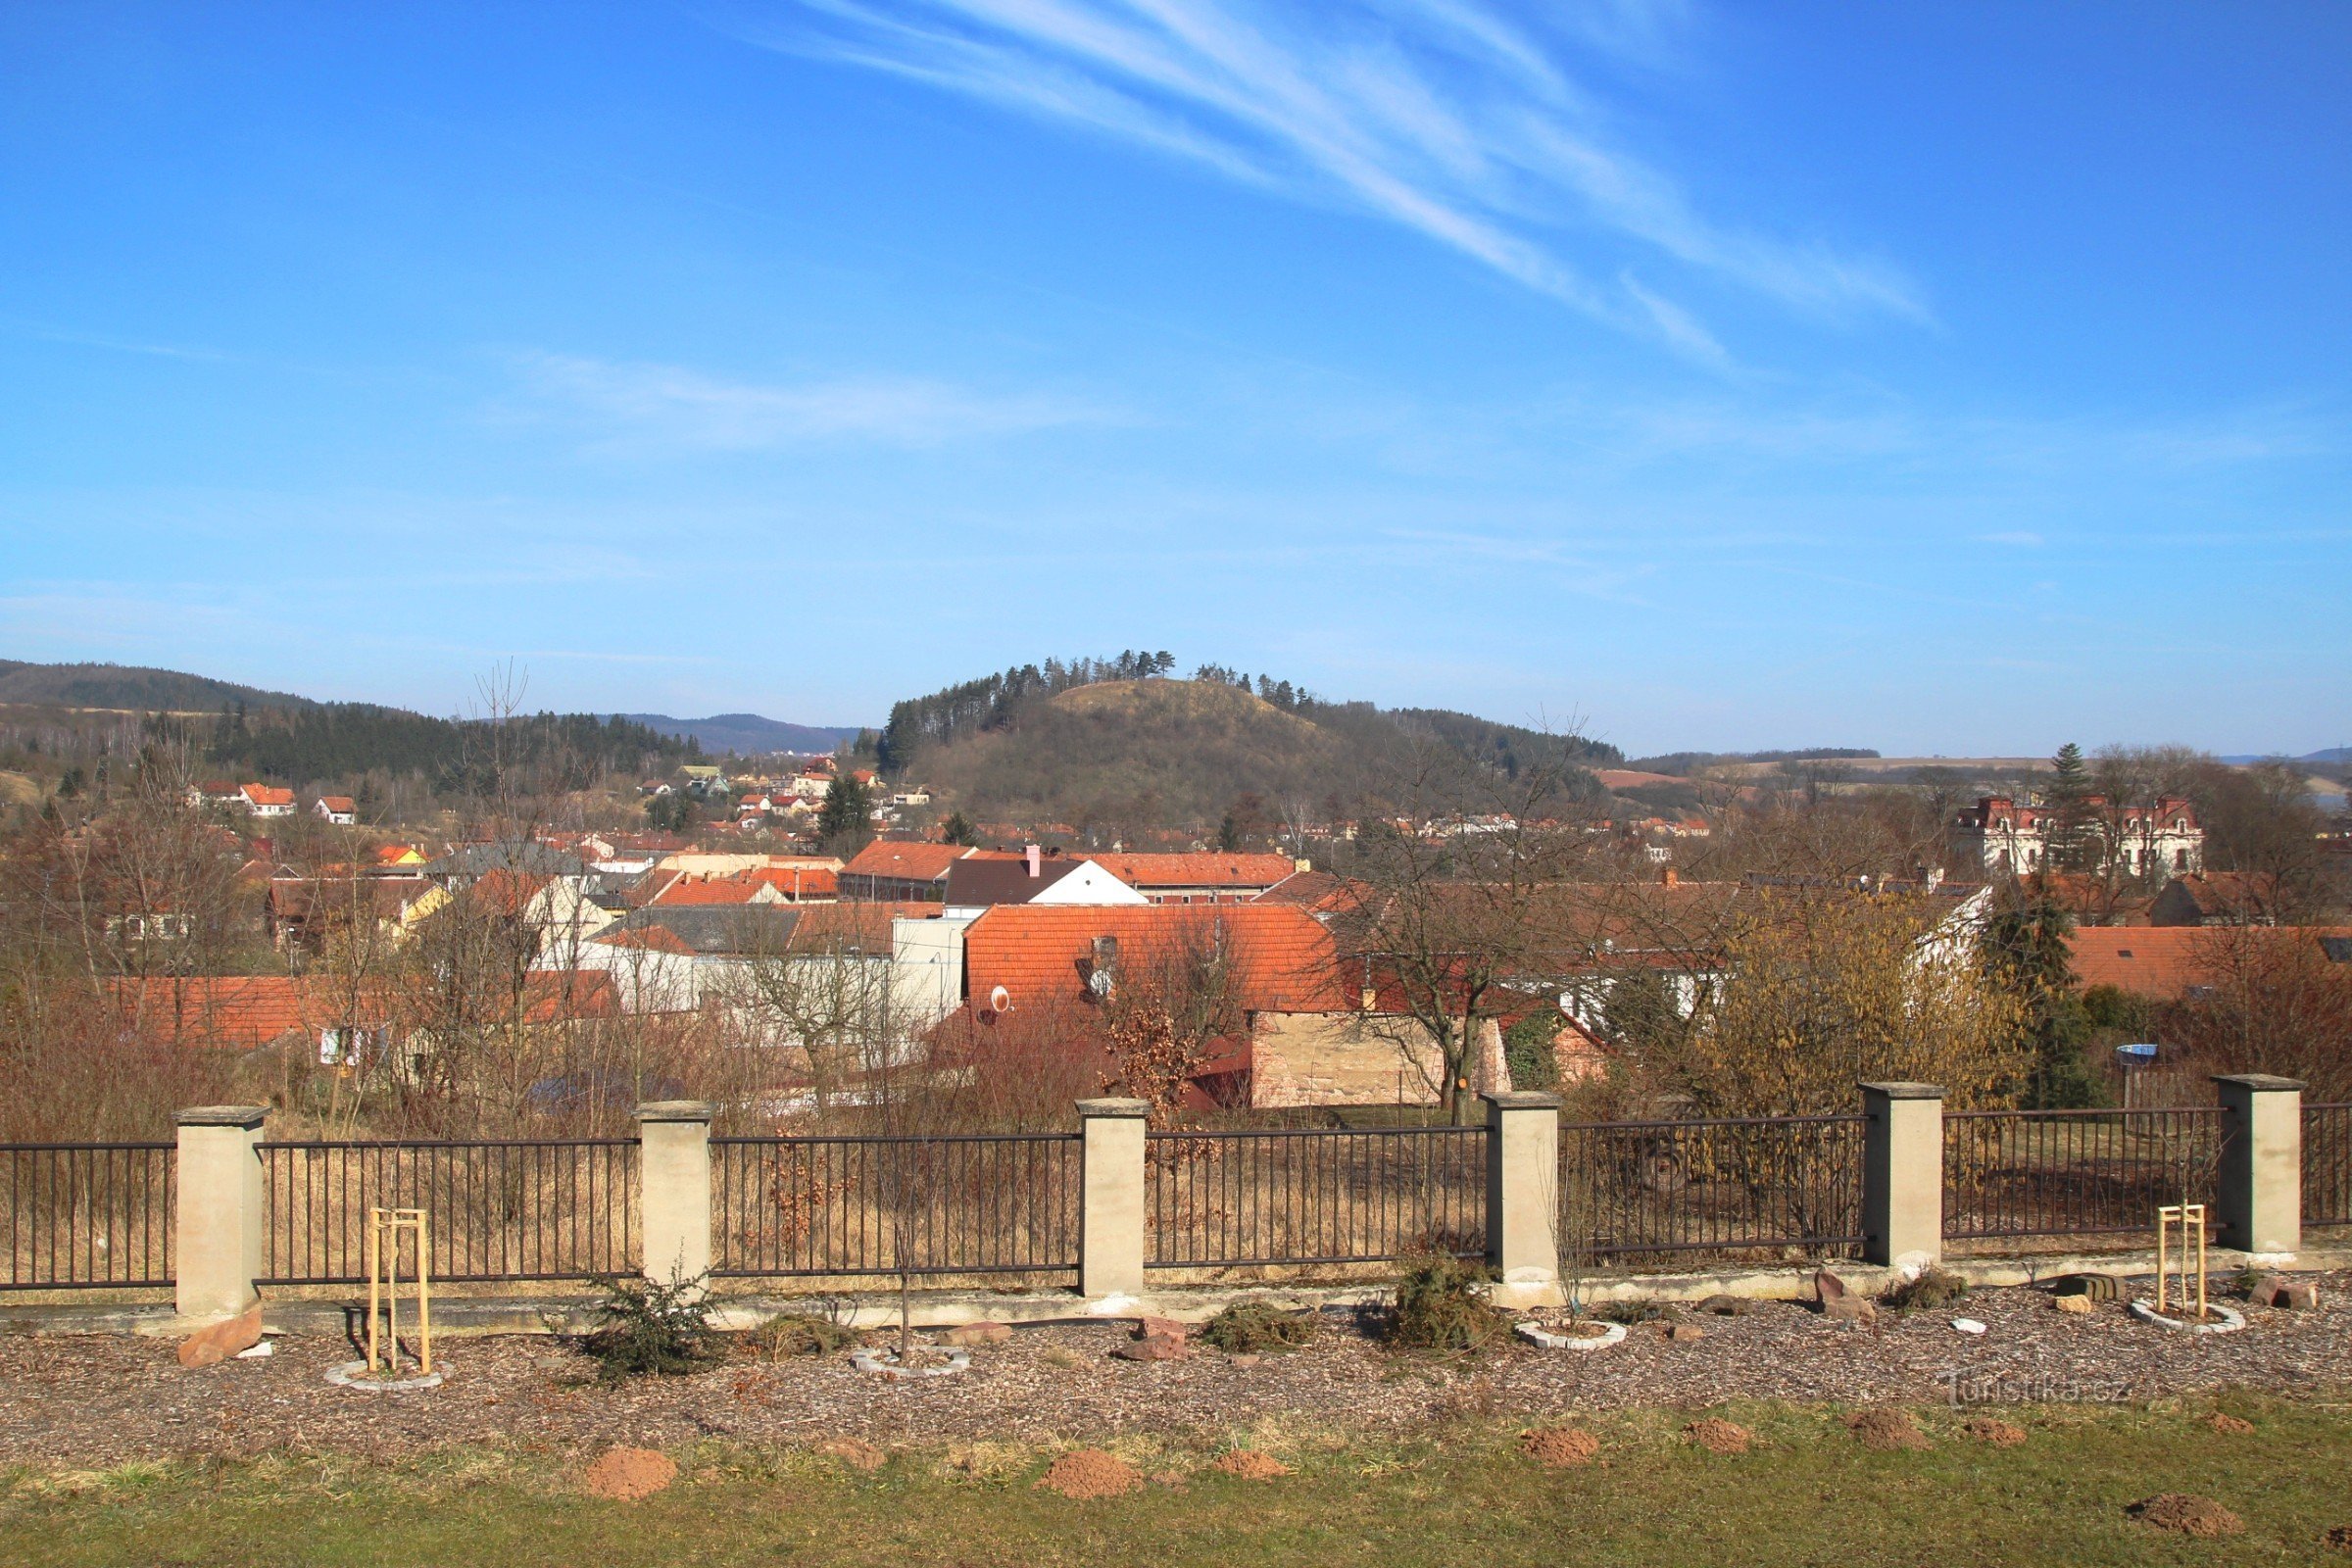 Panorama grada Svitavky, brdo Hradisko u pozadini